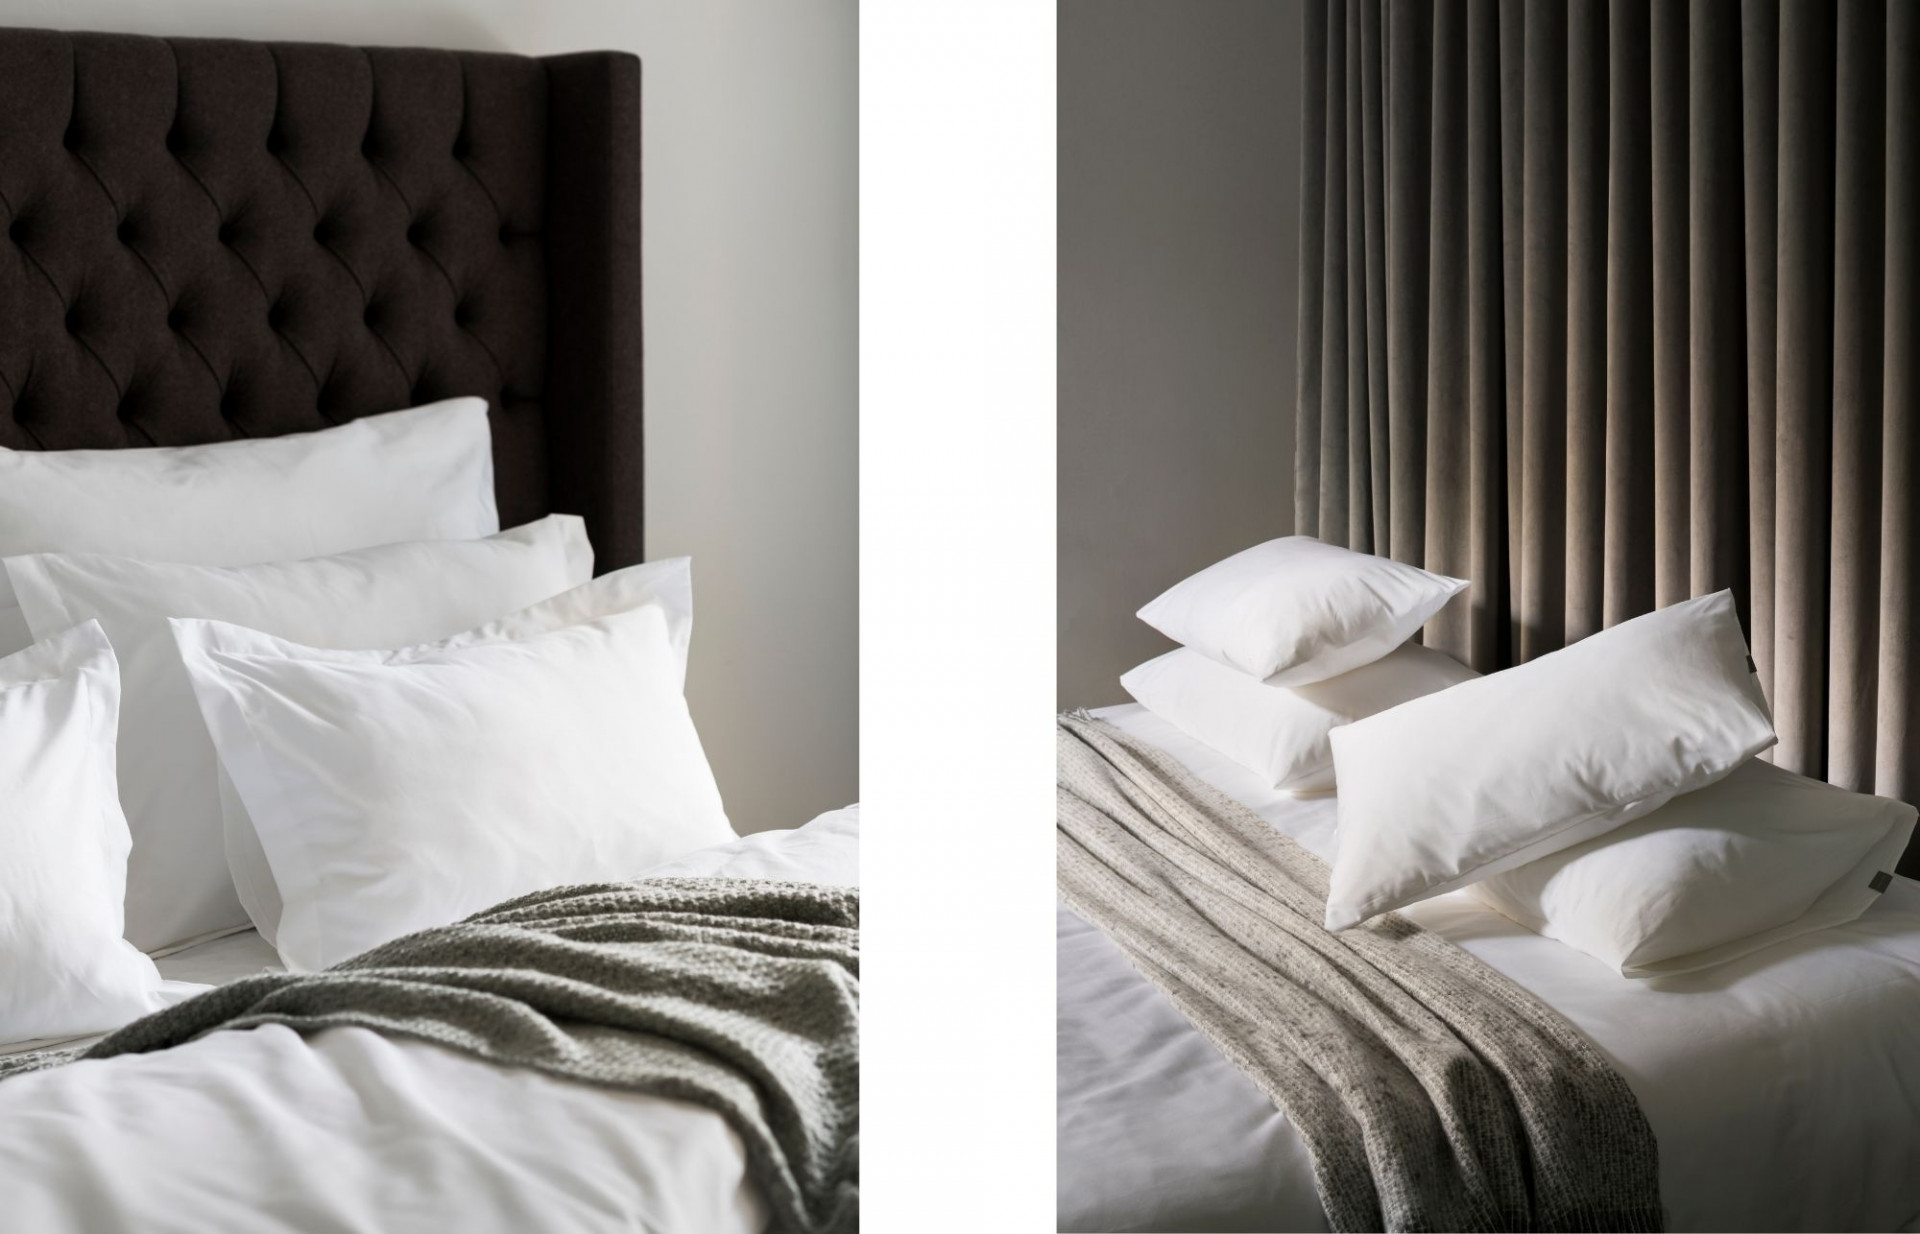 Pillow menu ako súčasť hotelových štandardov.